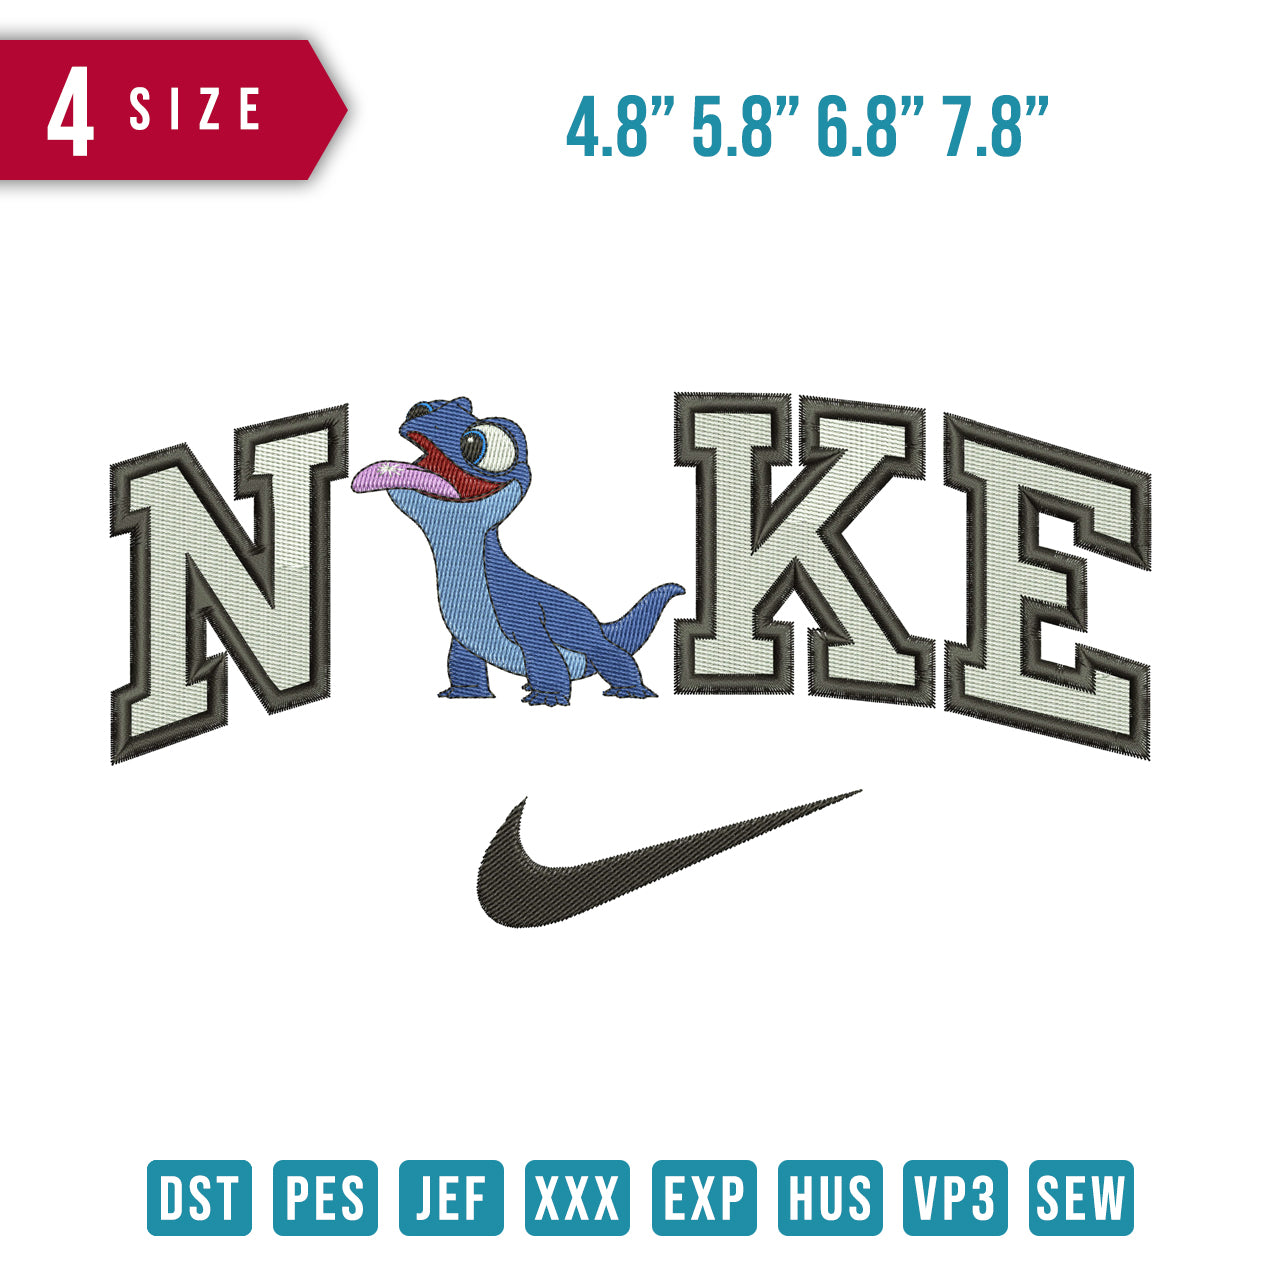 Nike Dino toon